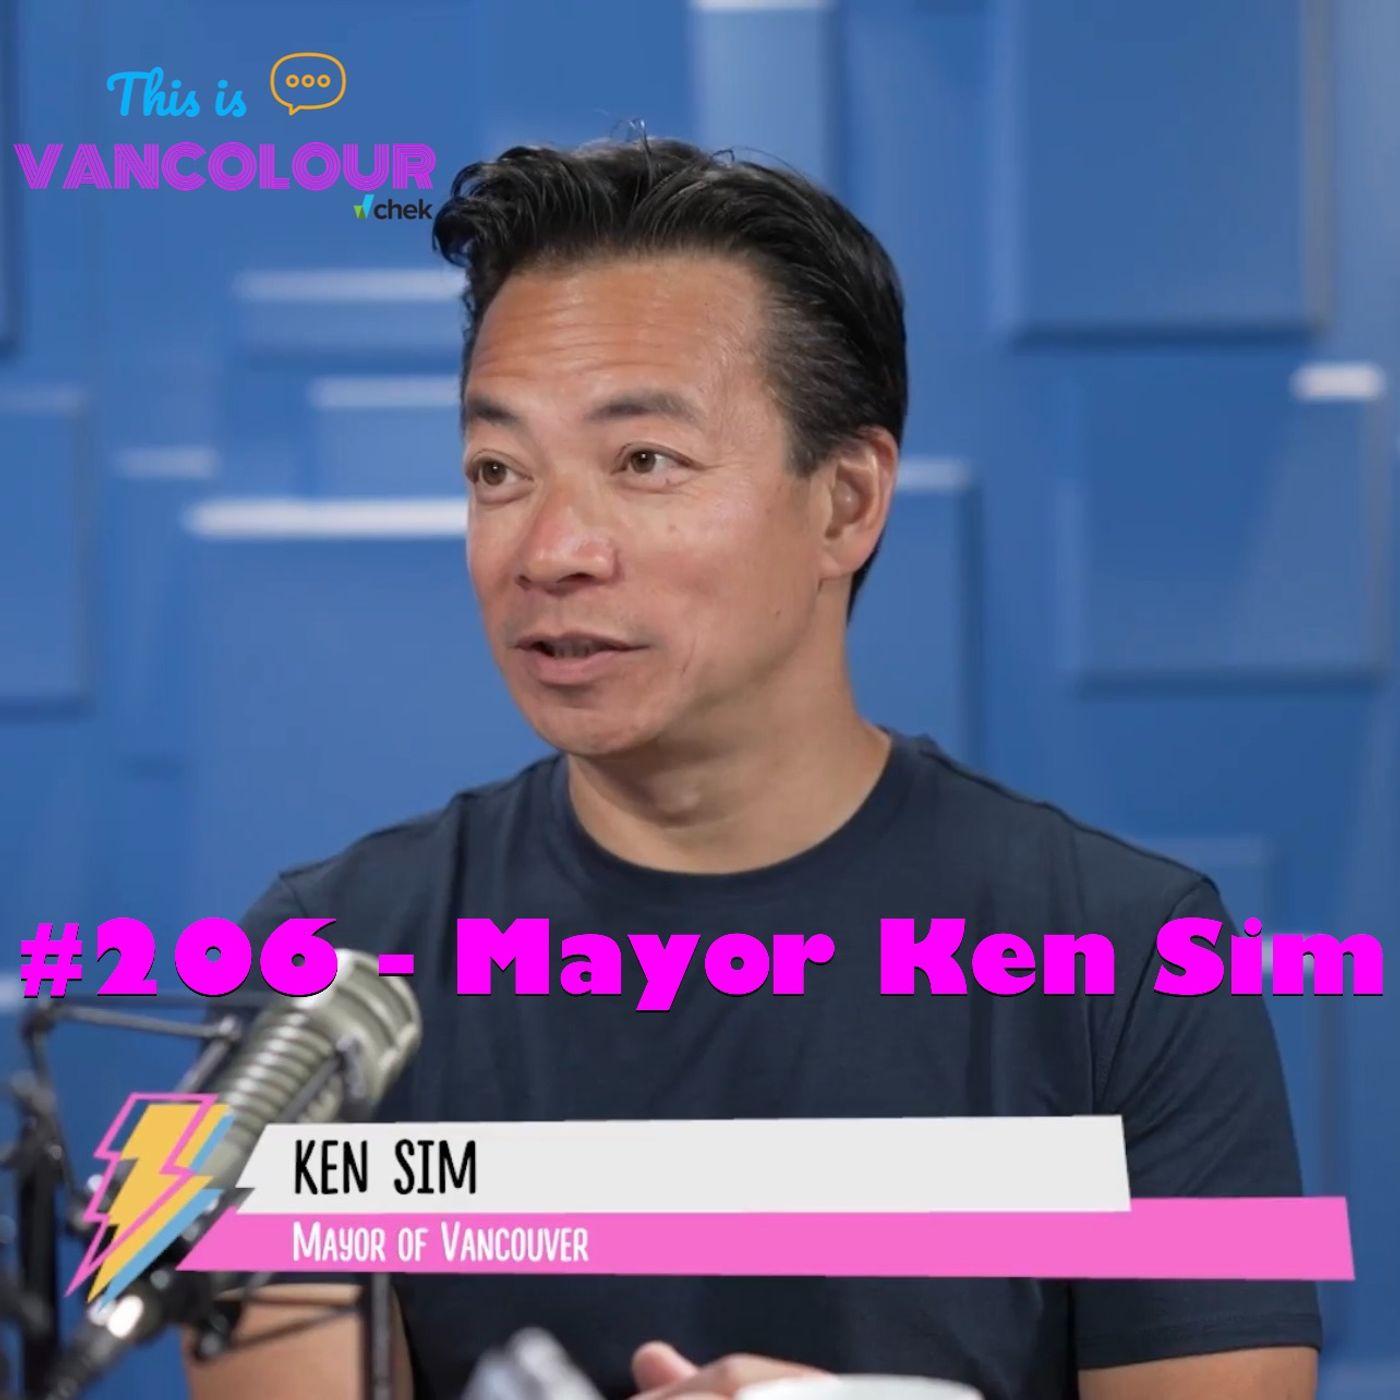 #206 - Mayor Ken Sim (ABC Vancouver)